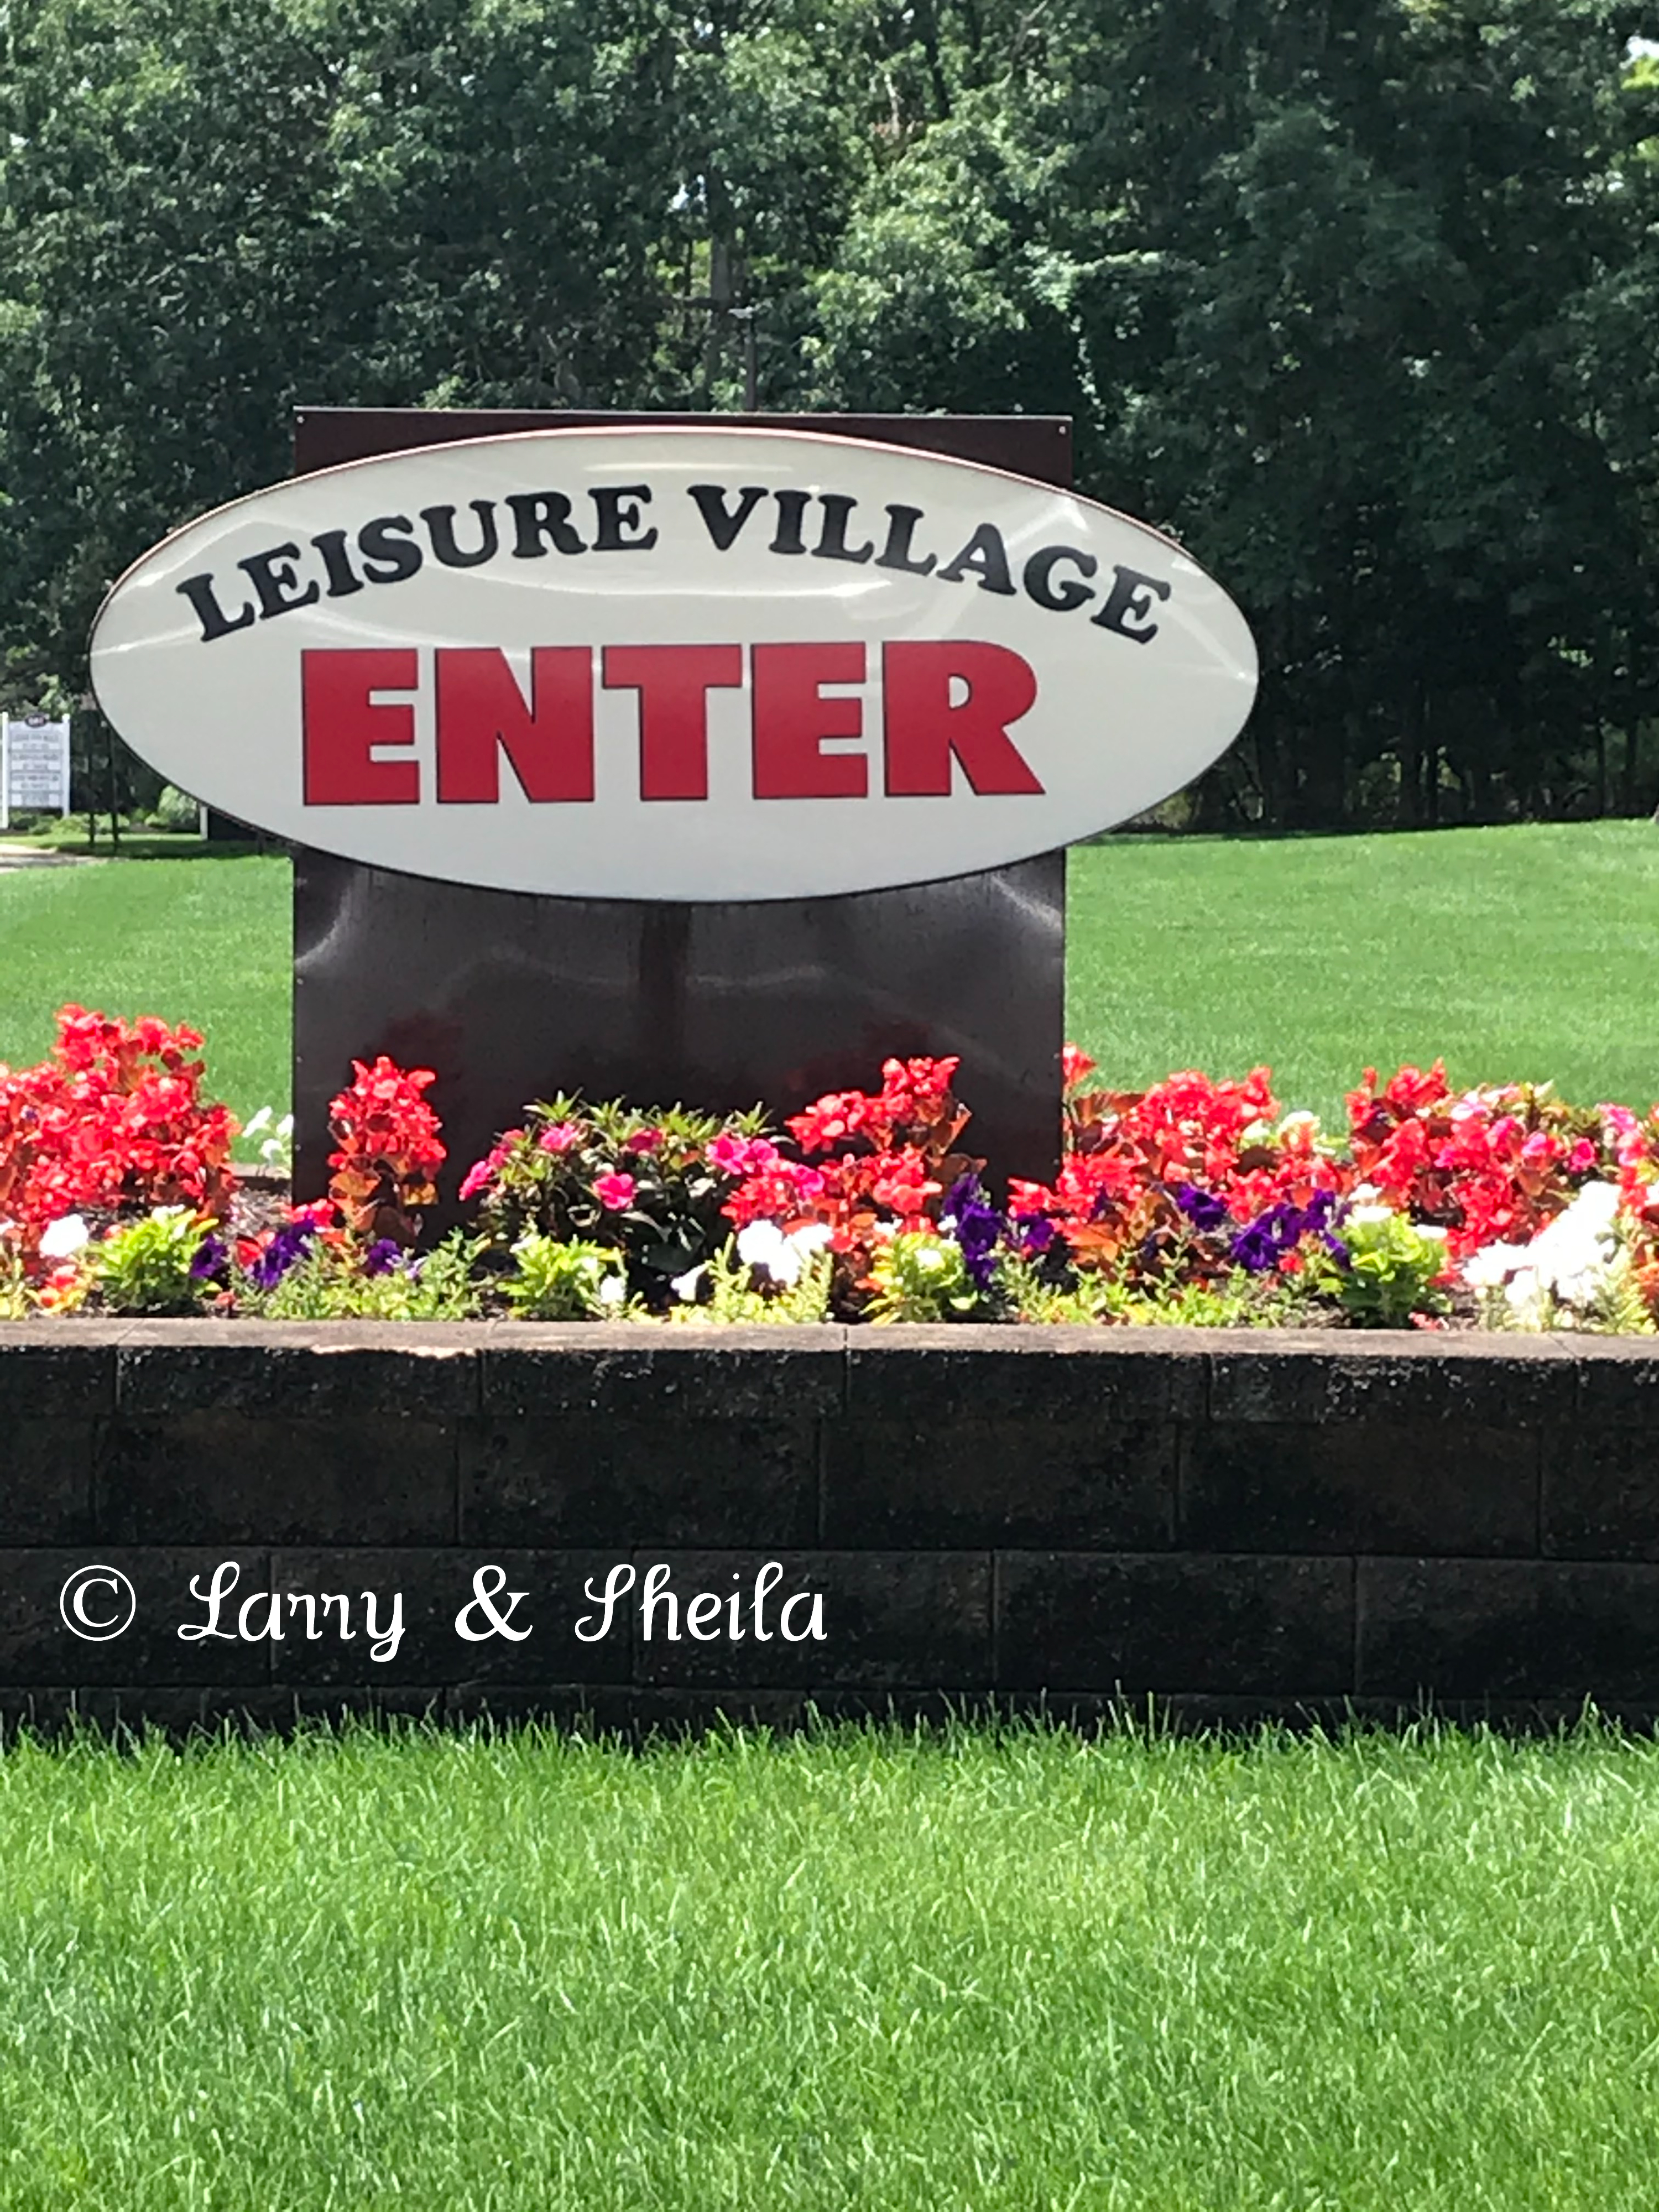 Leisure_Village_Entry.jpg